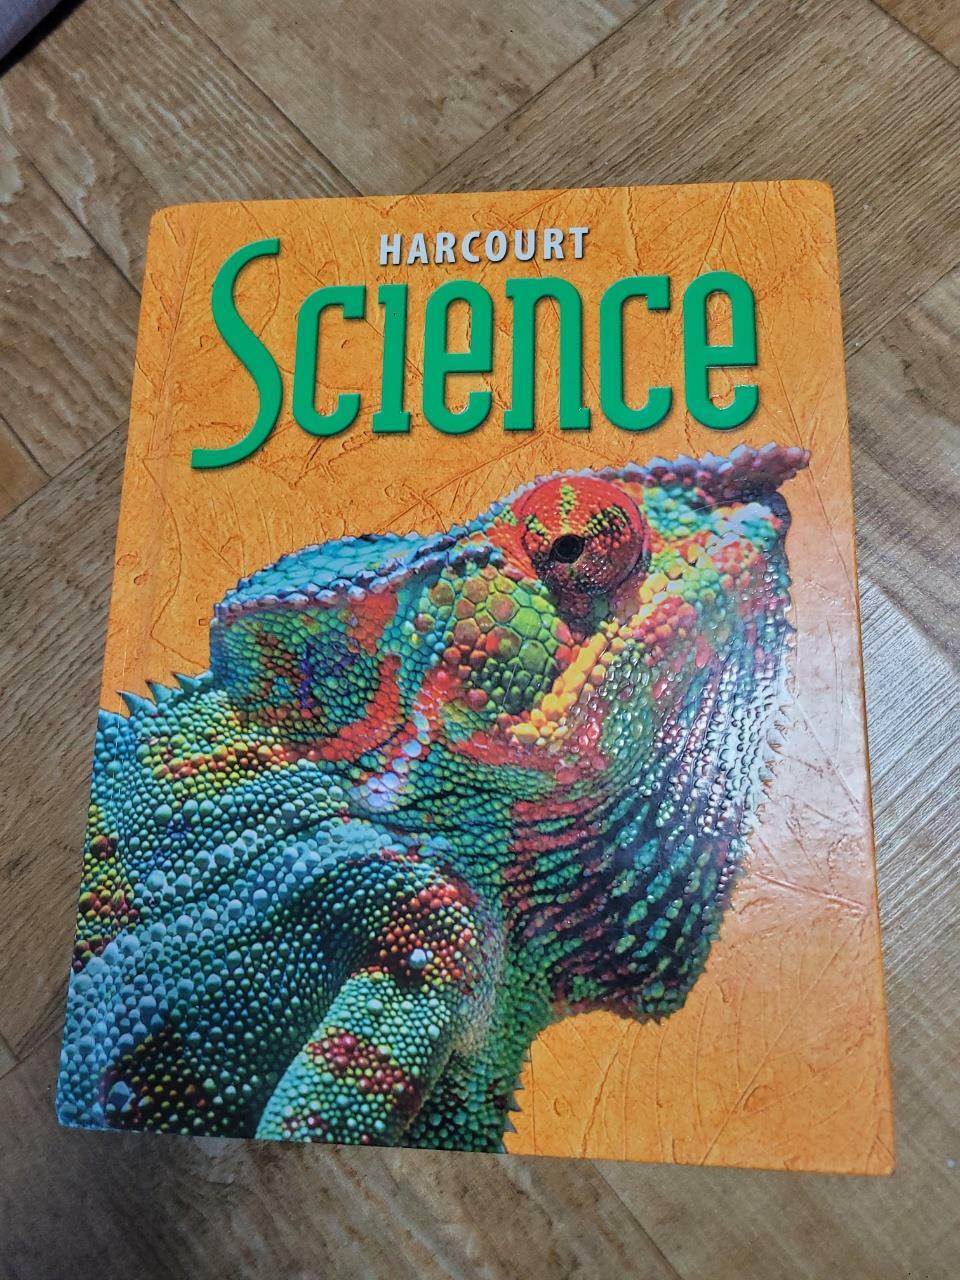 [중고] Harcourt Science: Student Edition Grade 5 2002 (Hardcover)